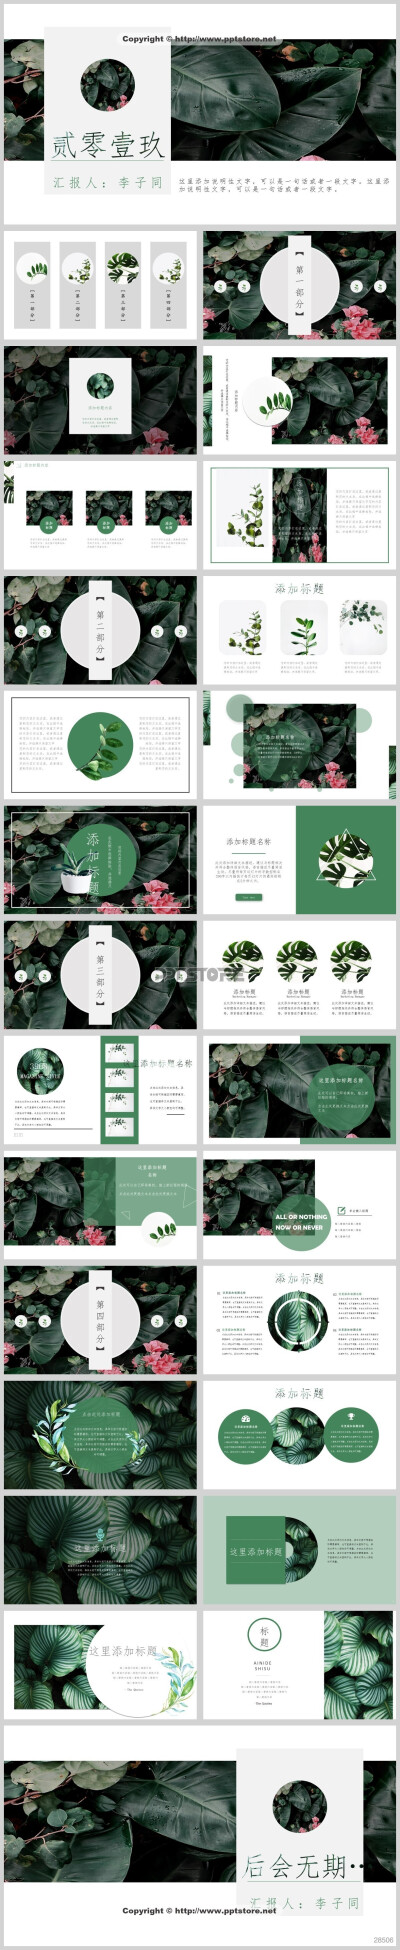 28506-【植物系】简约清爽绿色植物清新PPT模板